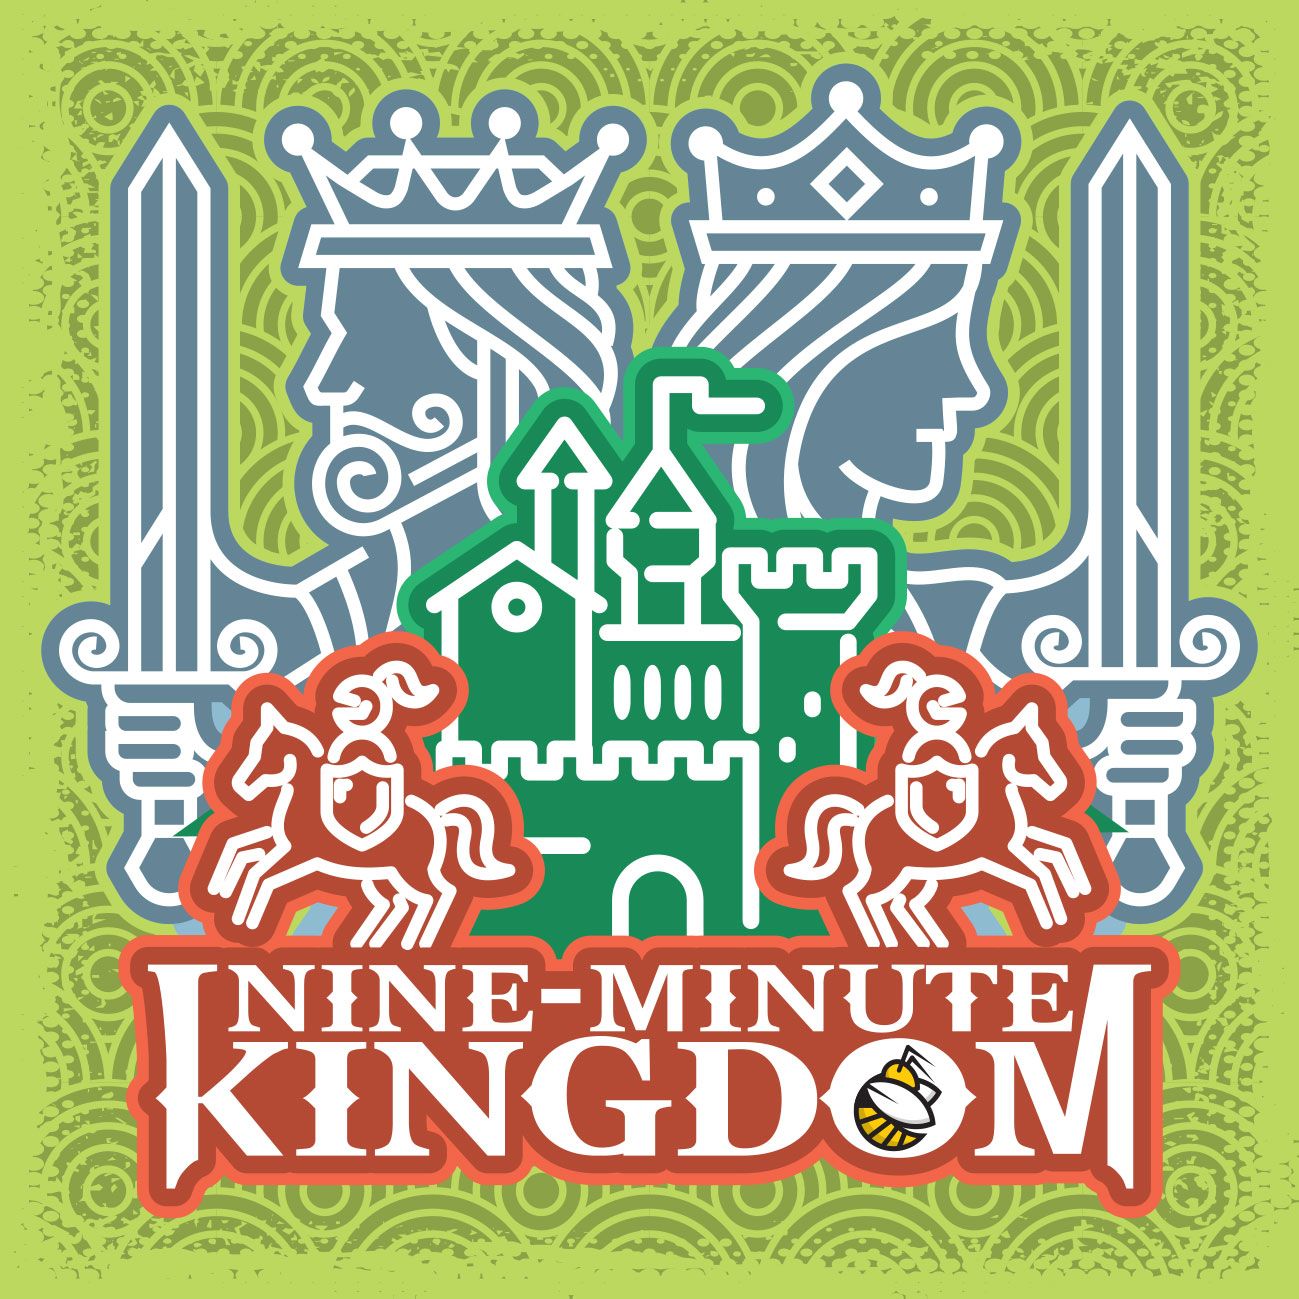 Nine-minute Kingdom [KS]